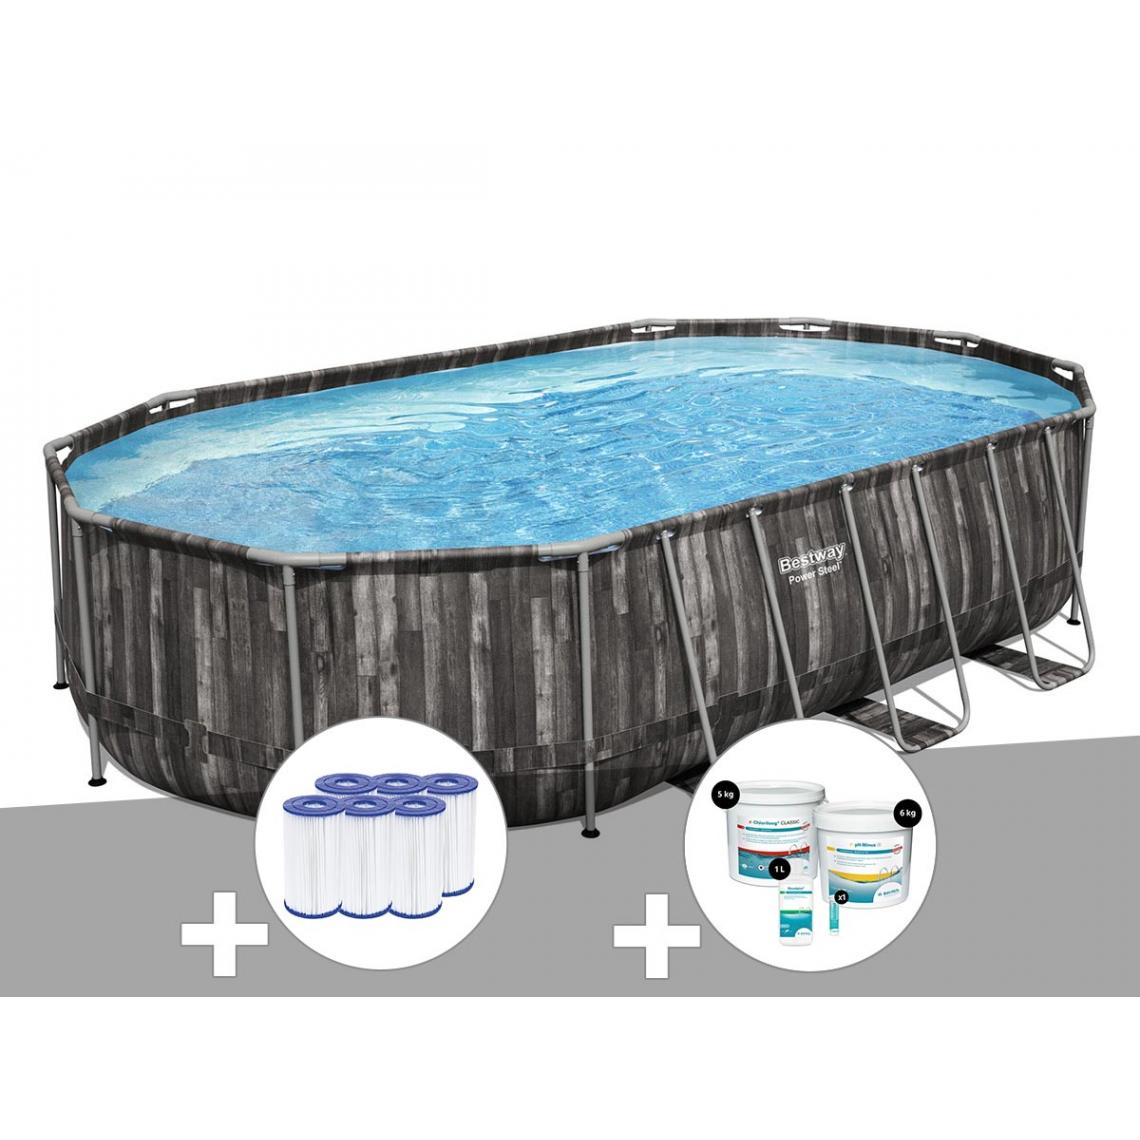 Bestway - Kit piscine tubulaire ovale Bestway Power Steel décor bois 6,10 x 3,66 x 1,22 m + 6 cartouches de filtration + Kit de traitement au chlore - Piscine Tubulaire